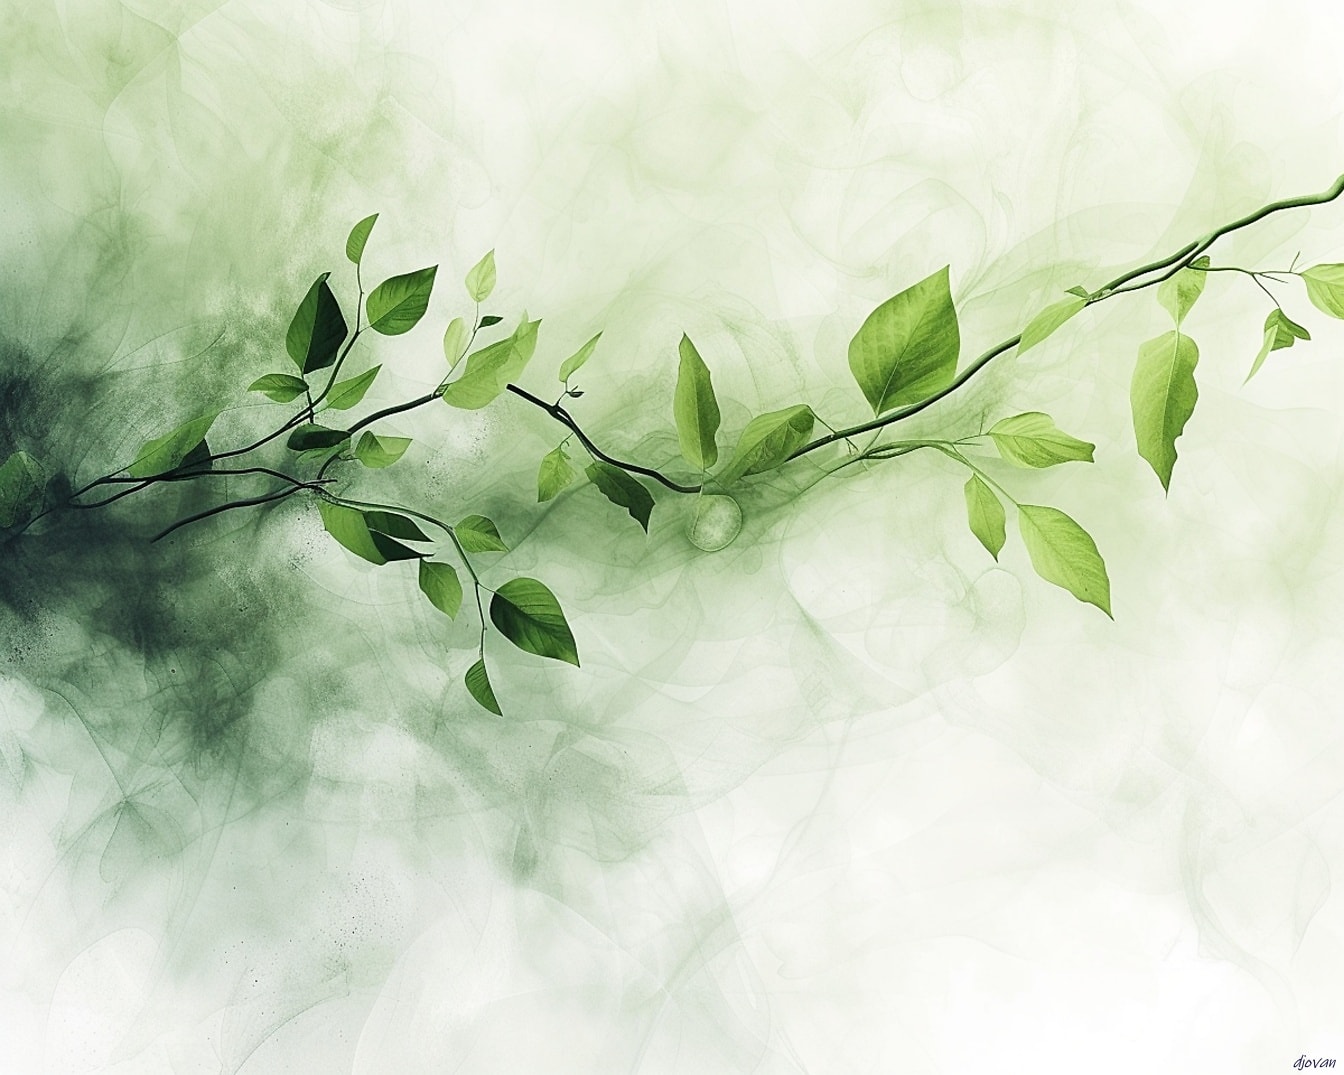 Ilustración de hojas verdes en una rama que emerge de un fondo brumoso